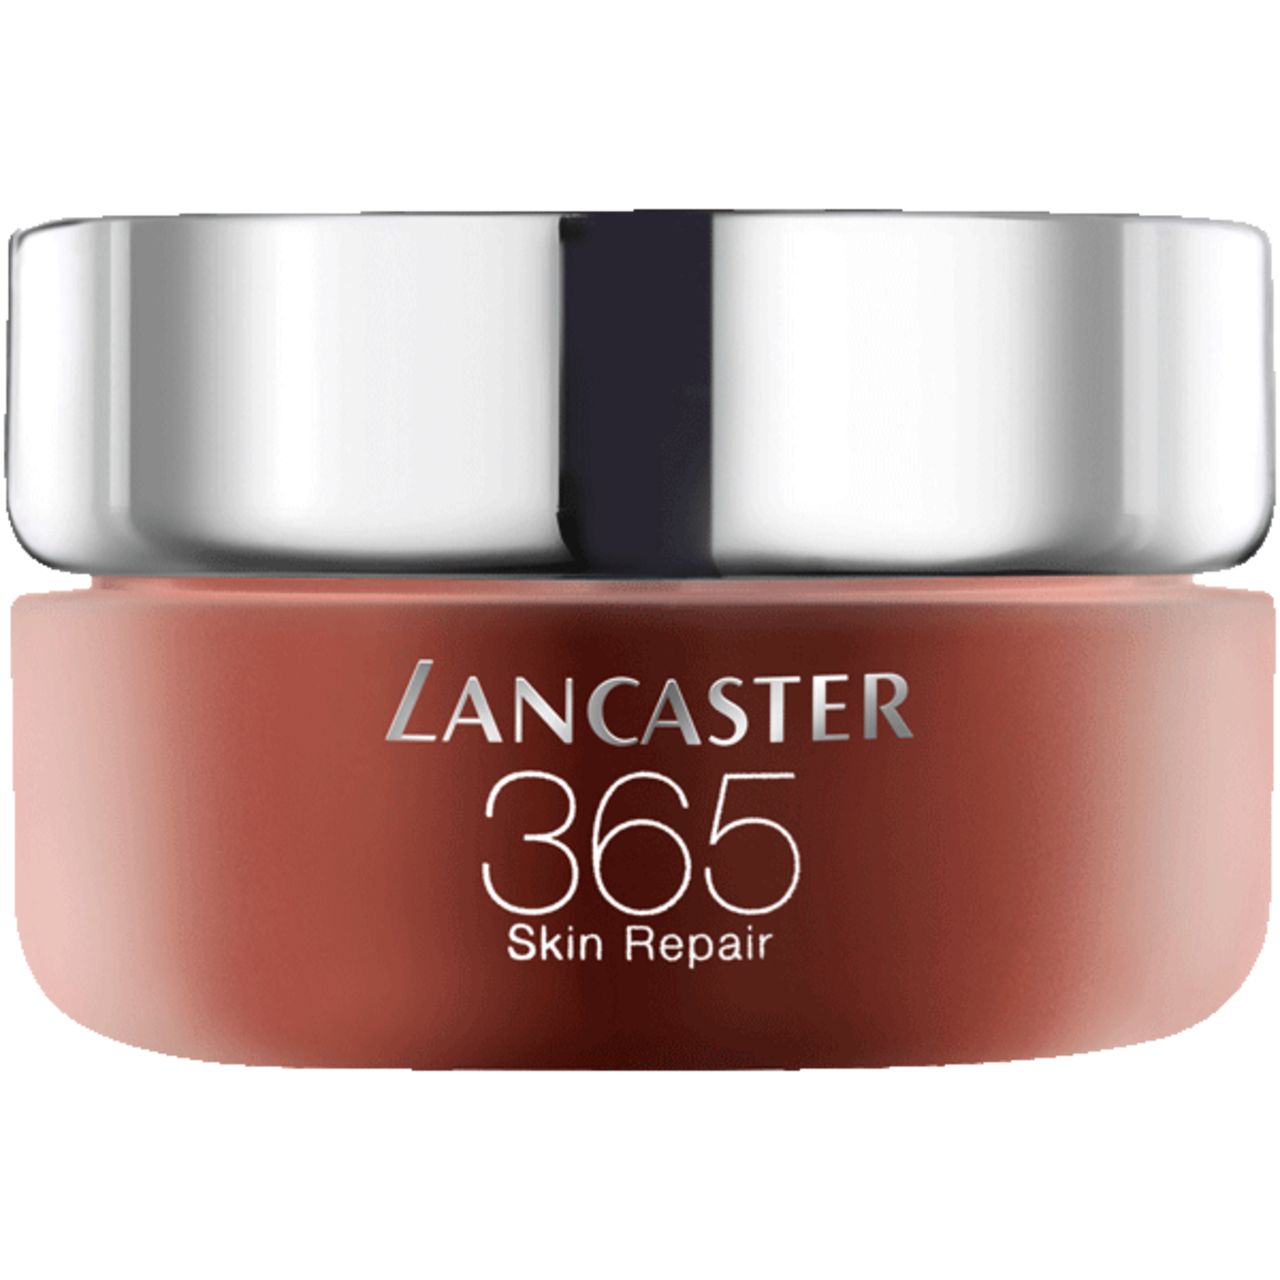 Lancaster, 365 Skin Repair Eye Cream